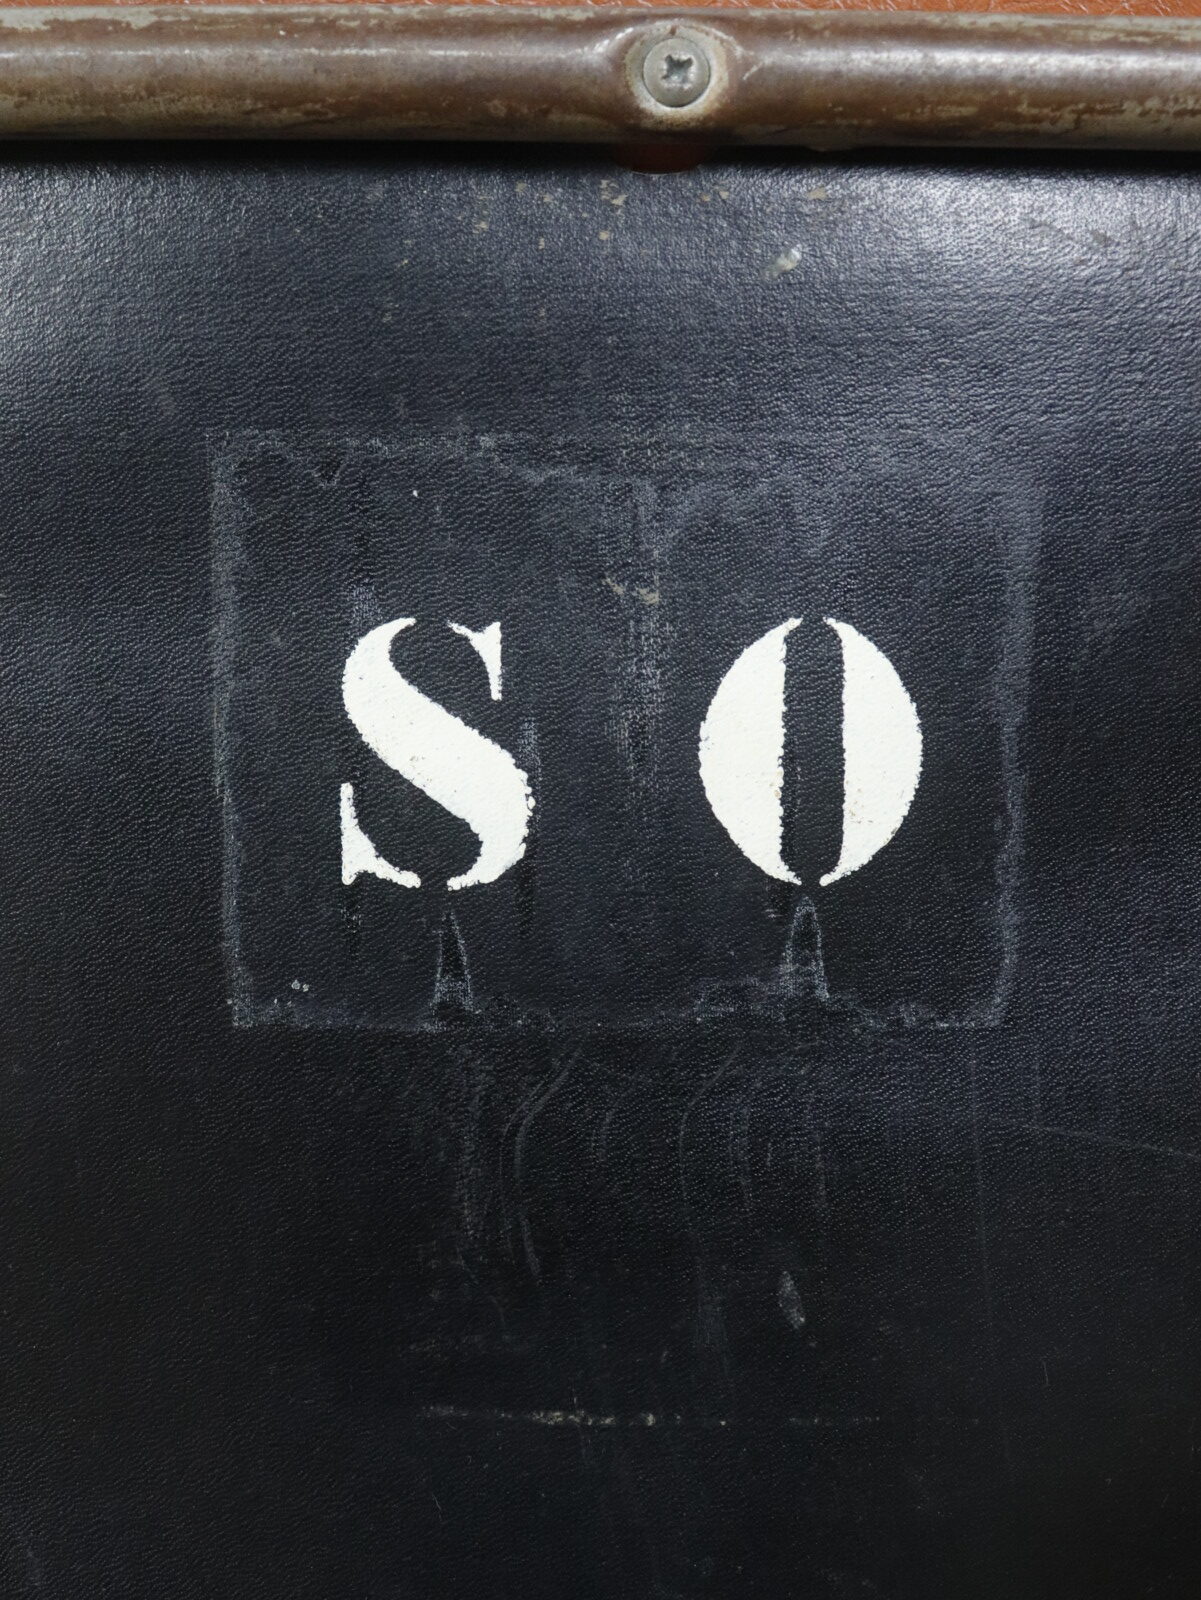 1950's,Souvignet,folding chair,France,